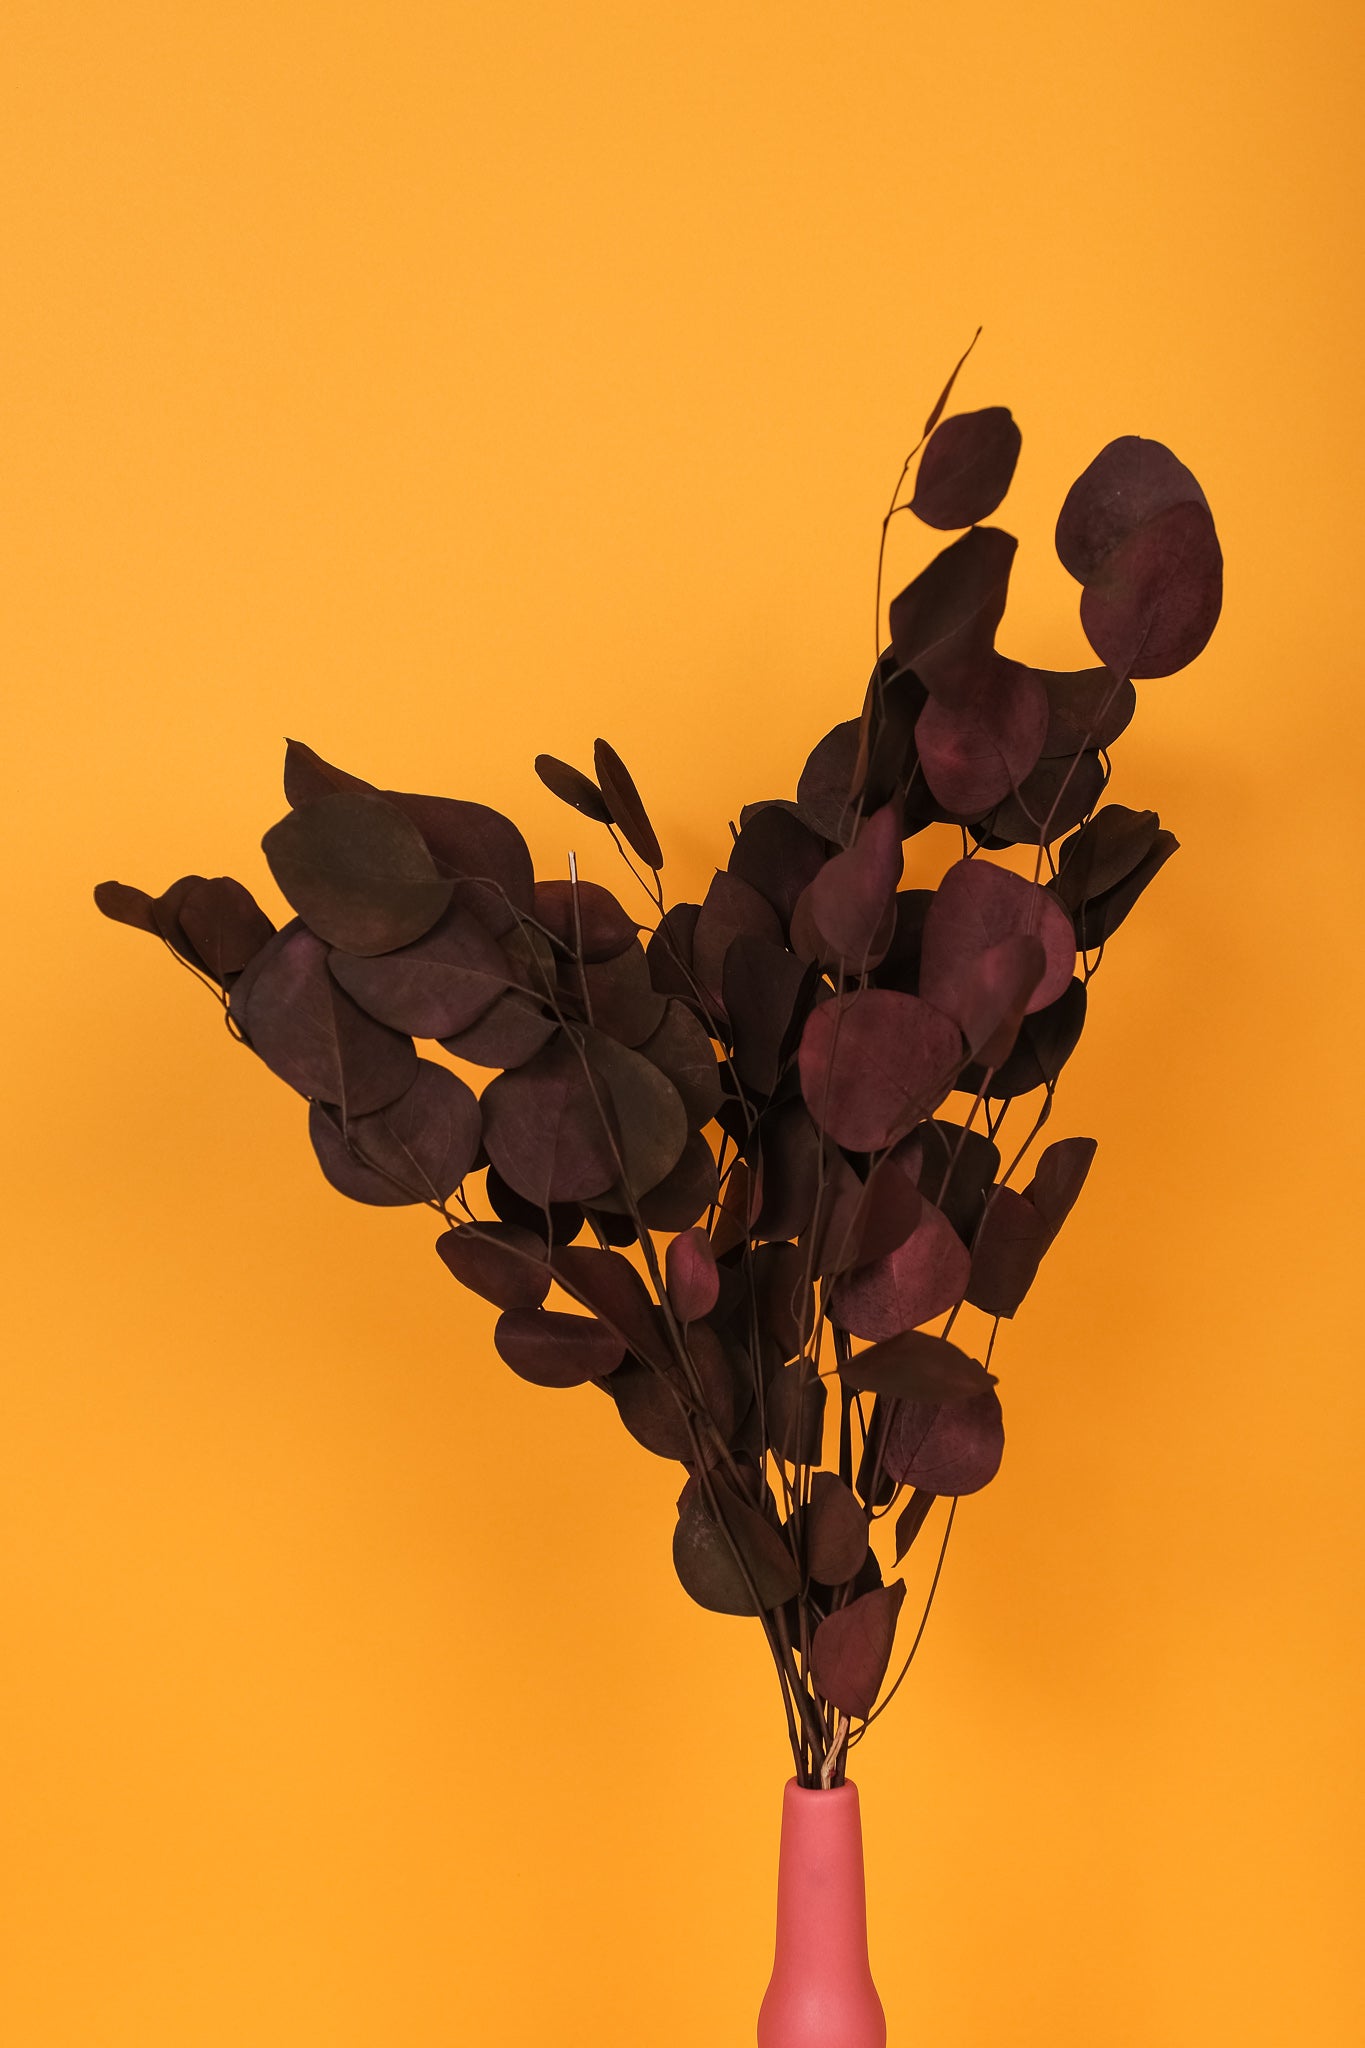 Dark Brown-Black Populus